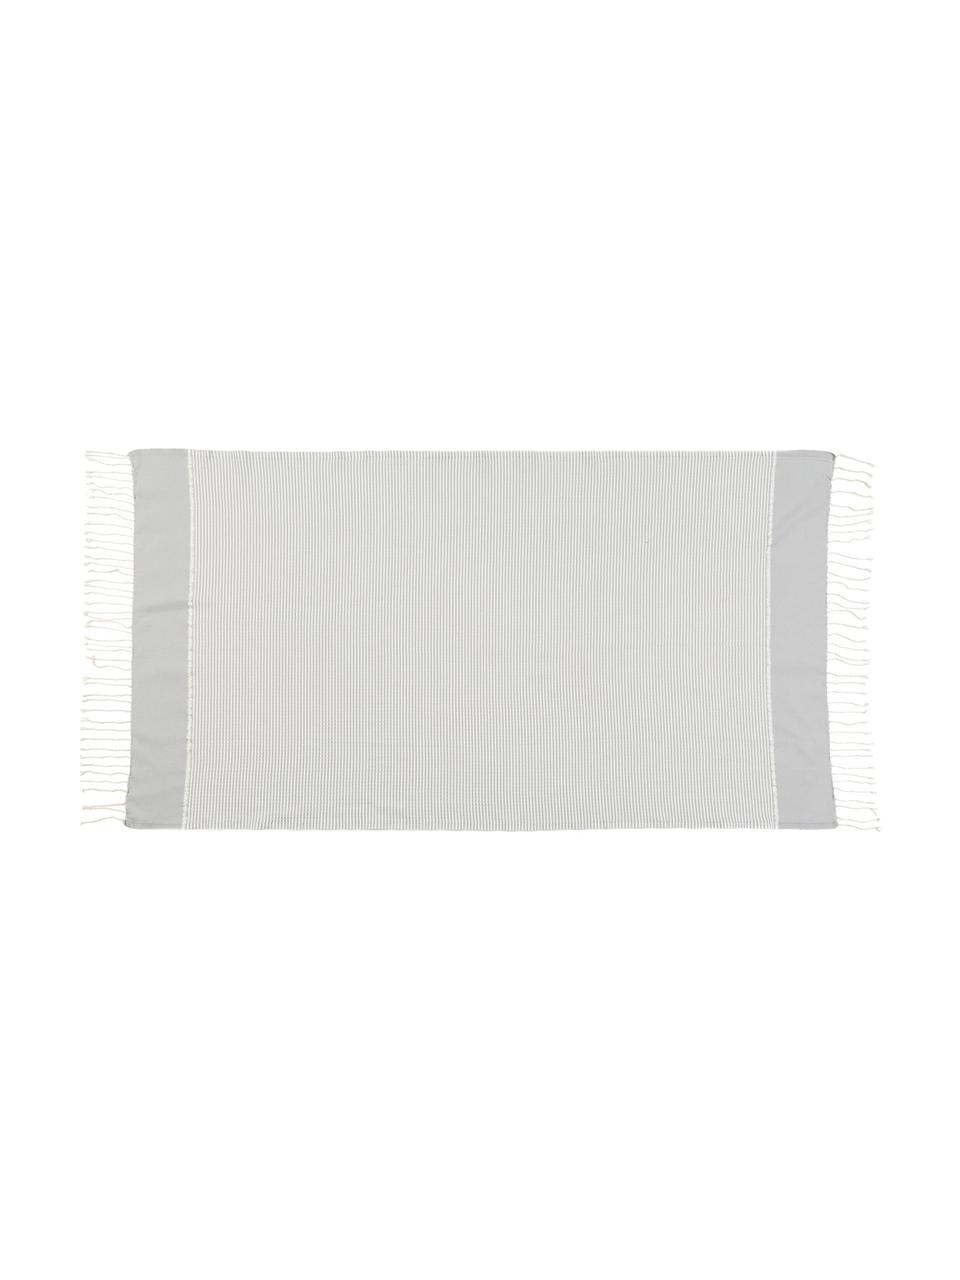 Set de toallas con tejido lúrex Copenhague, 3 uds., Gris perla, plateado, blanco, Set de diferentes tamaños